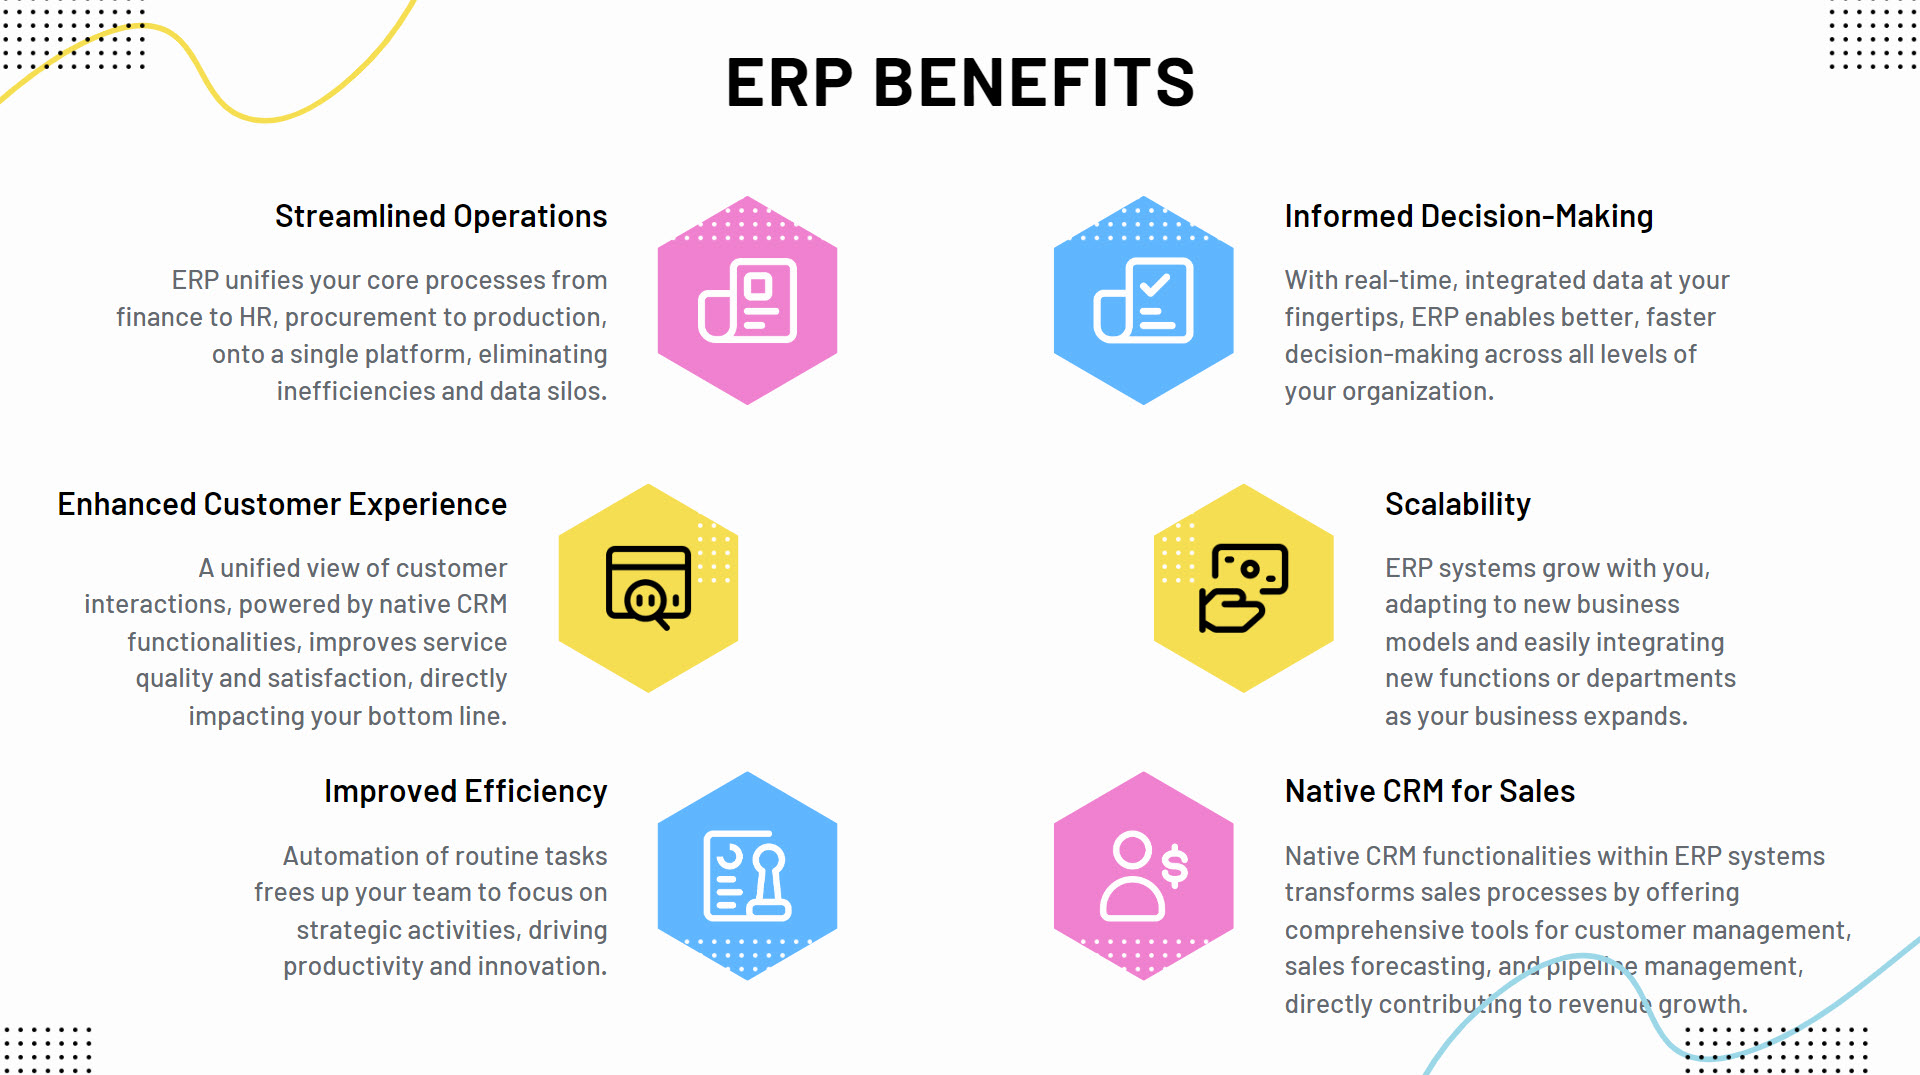 ERP Benefits